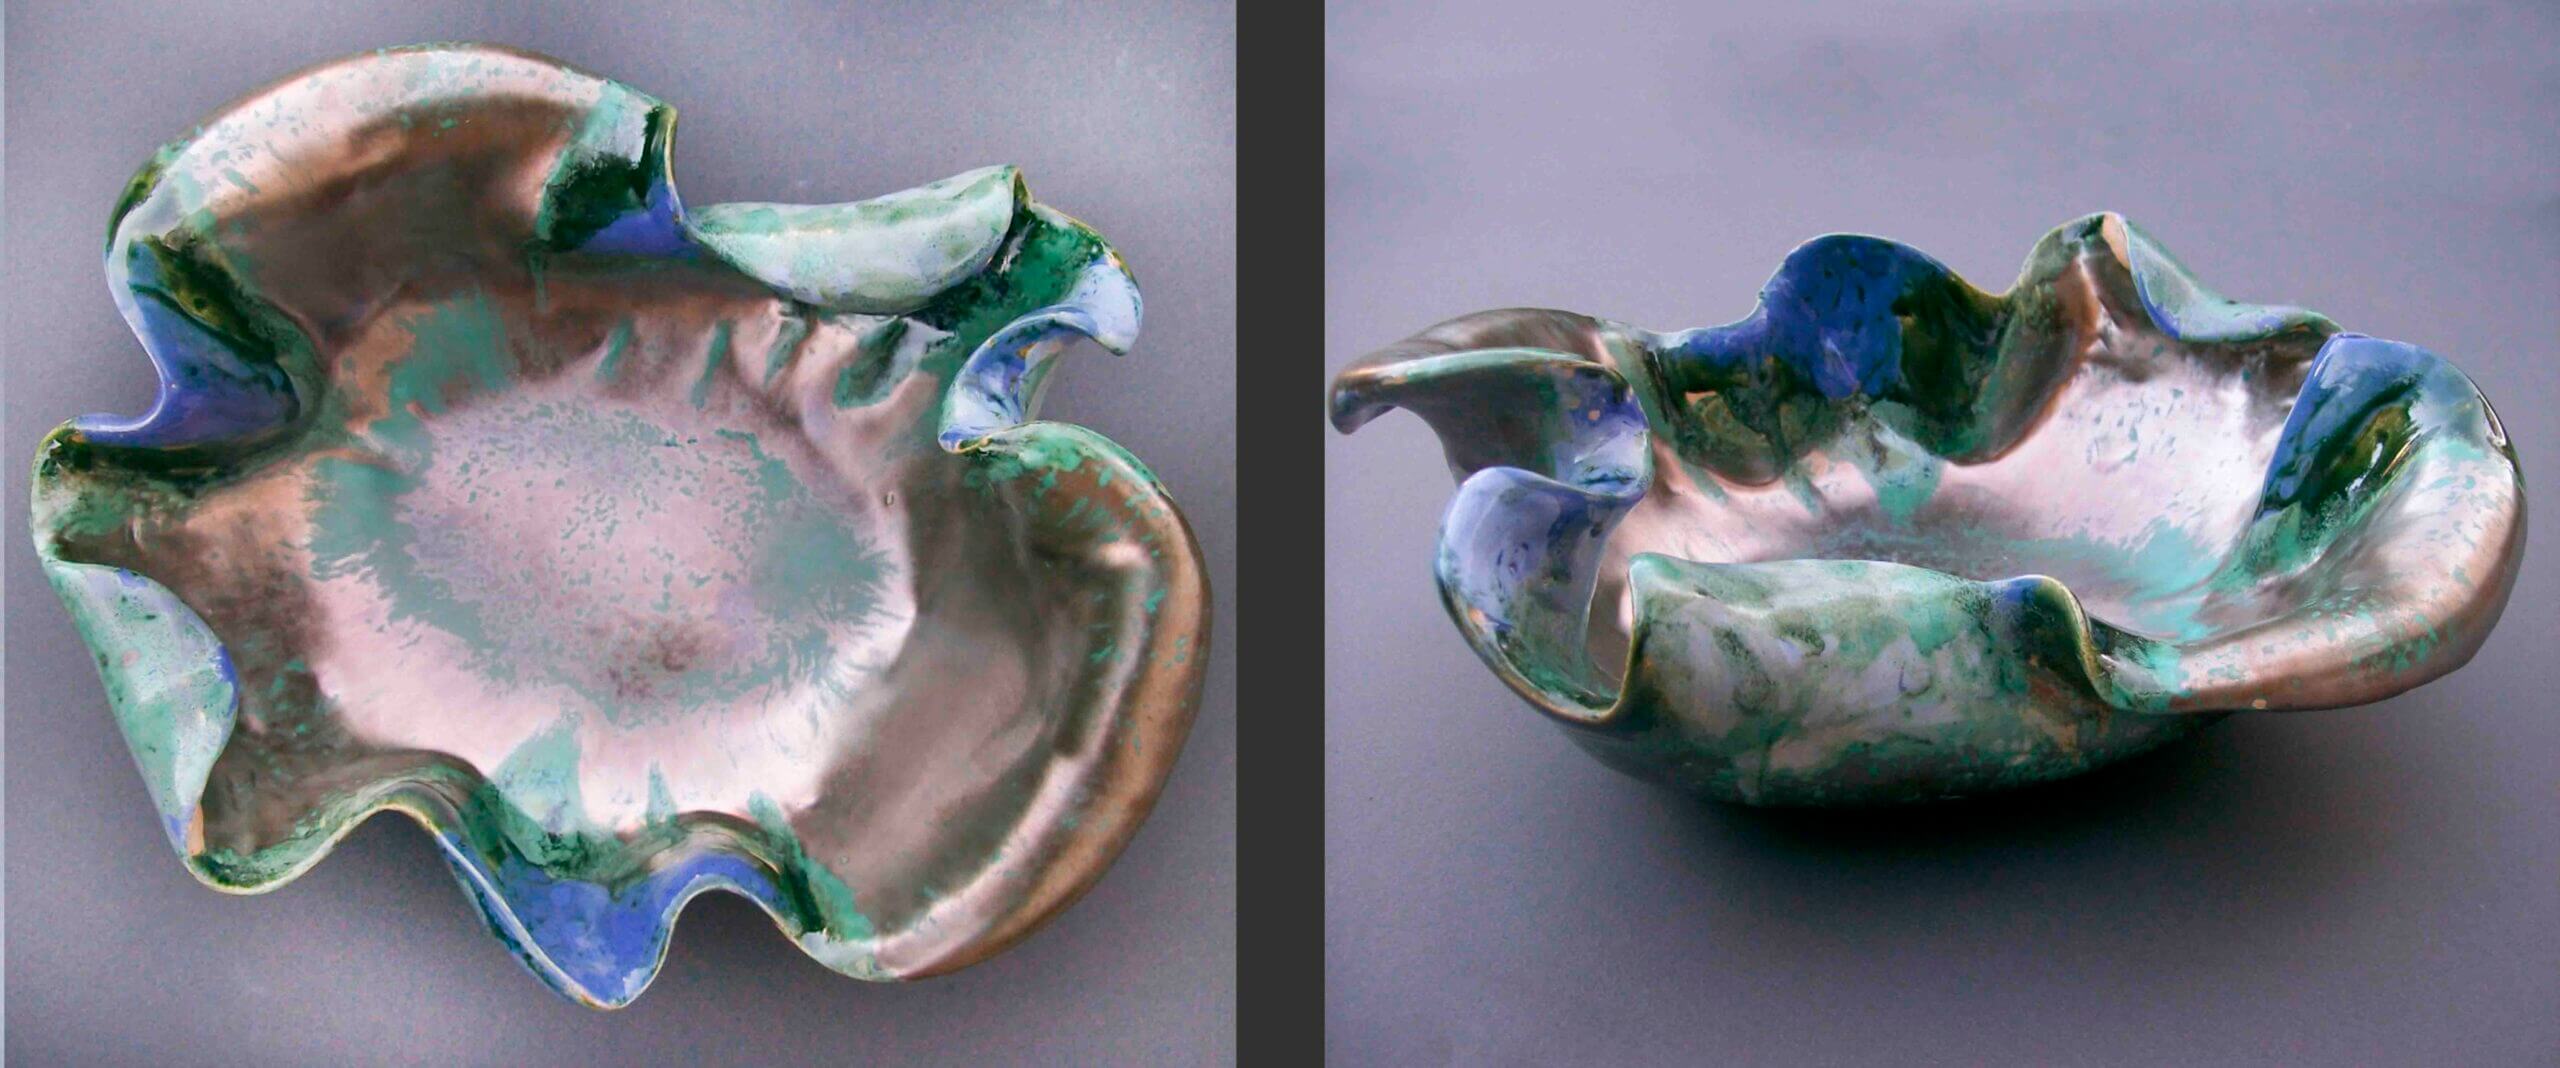 Techniki ceramiki Ceramika glazurowana Ceramika ręcznie formowana Ceramiczne kompozycje i dekoracje Ceramika wypalana w wysokiej temperaturze Ceramika jako prezent